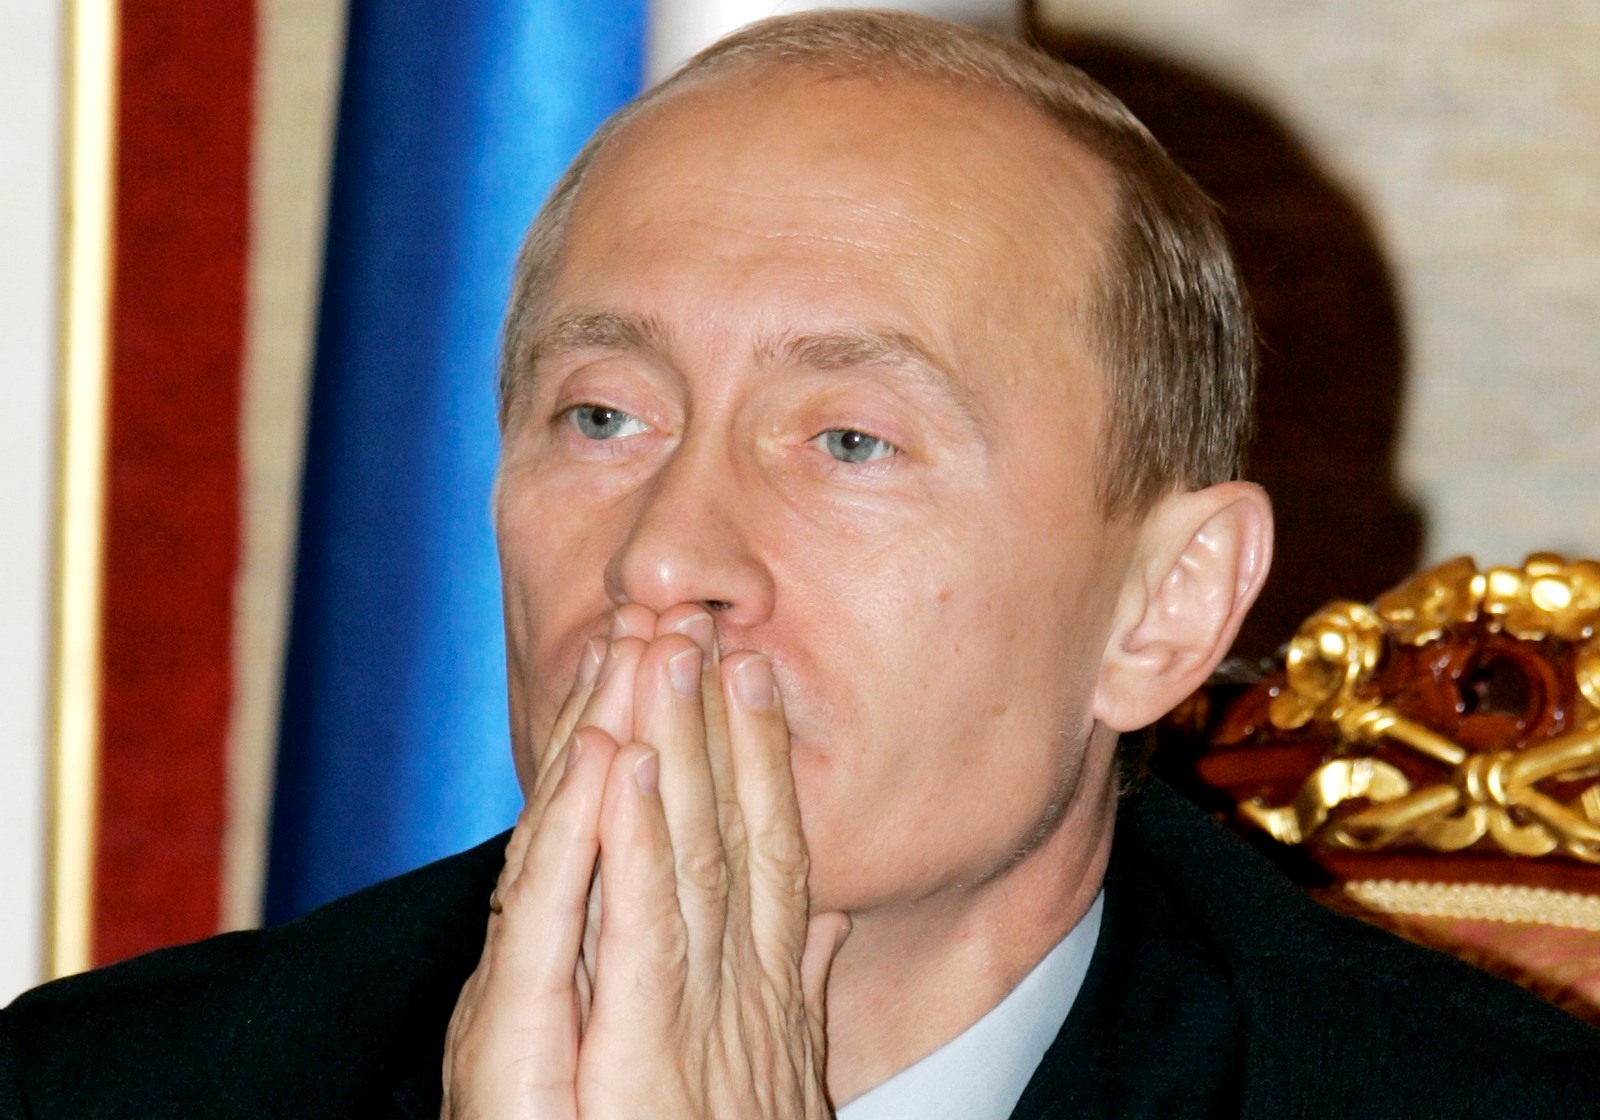 Κρεμλίνο: Ανοησίες. Ο Πούτιν δεν είναι άρρωστος